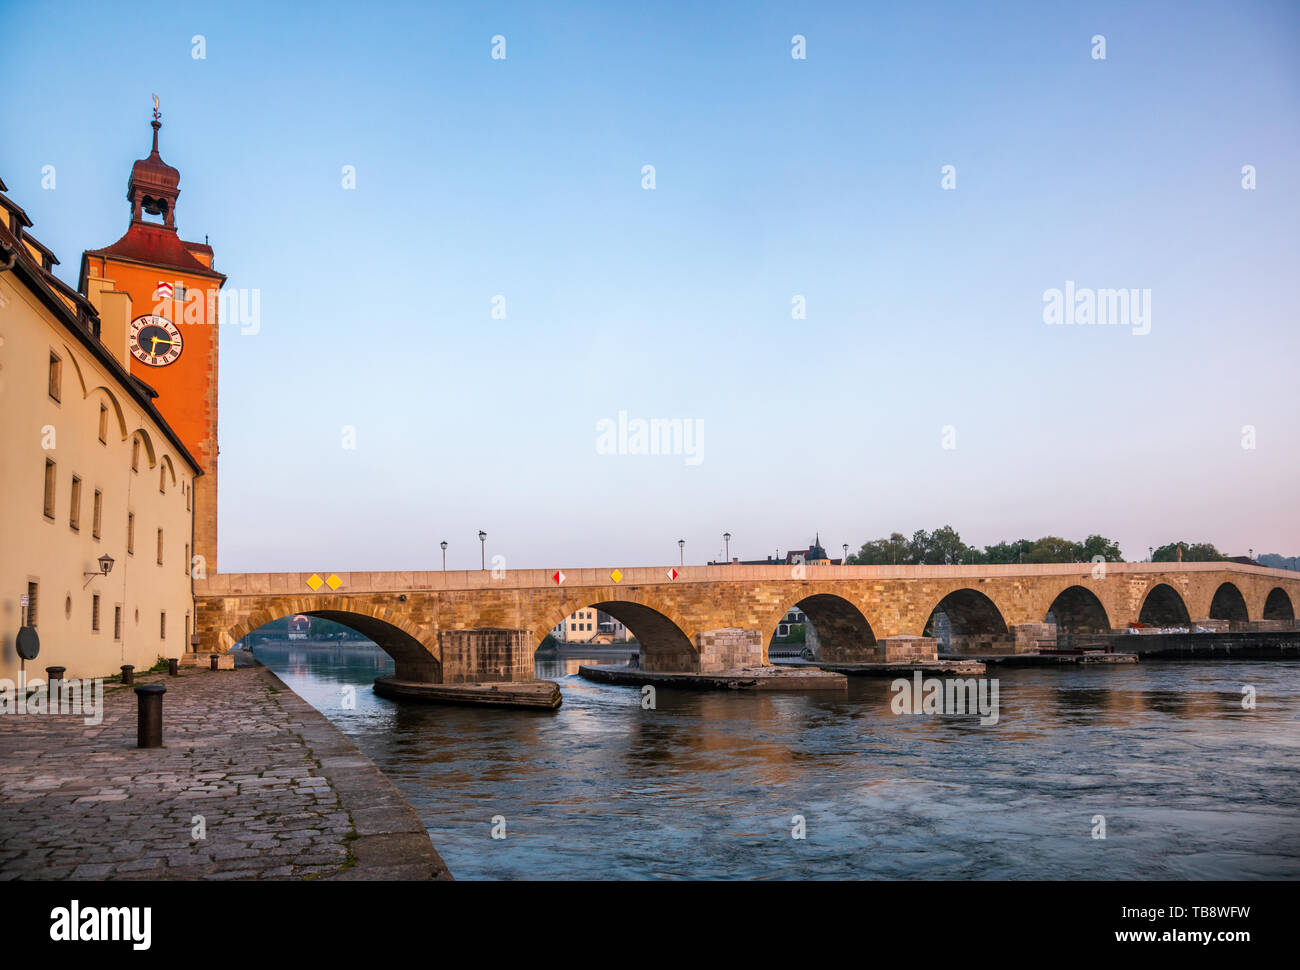 Regensburg cityscape avec le pont de pierre médiéval (Steinerne Brücke) sur le Danube, en Bavière, Allemagne, Europe. Regensburg dans l'un des plus popula Banque D'Images